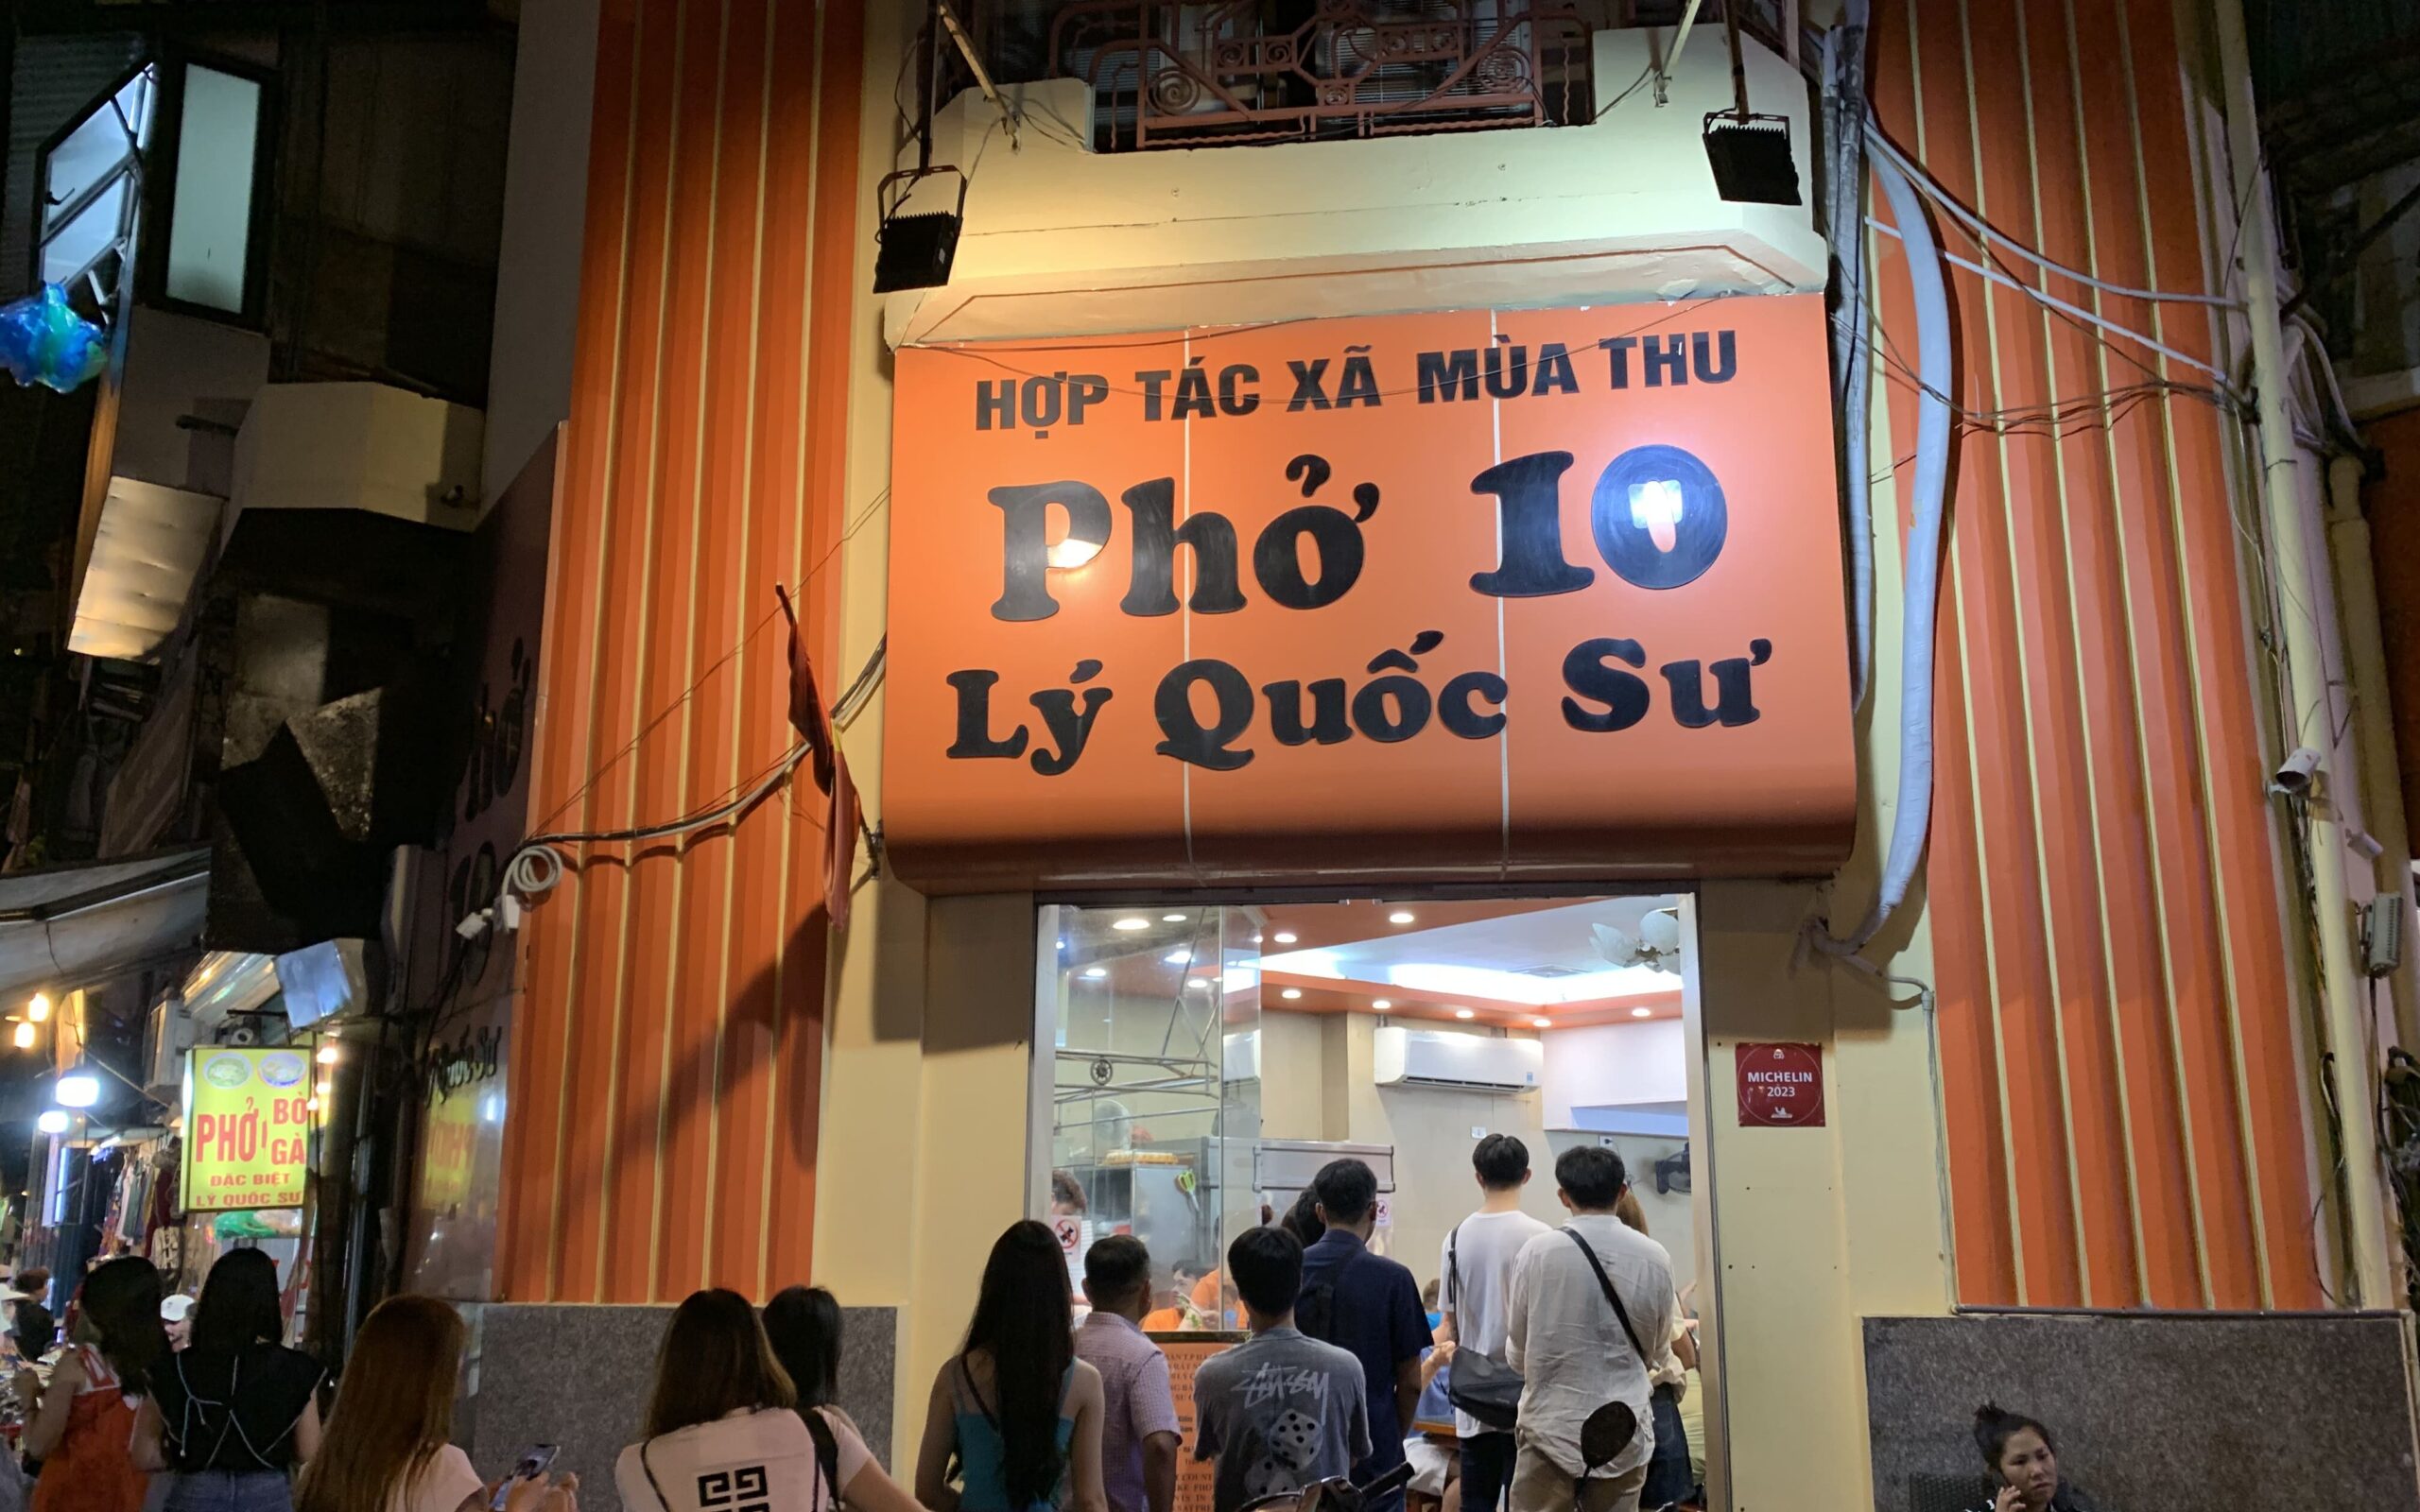 ハノイフォー有名店Pho 10 Ly Quoc Su